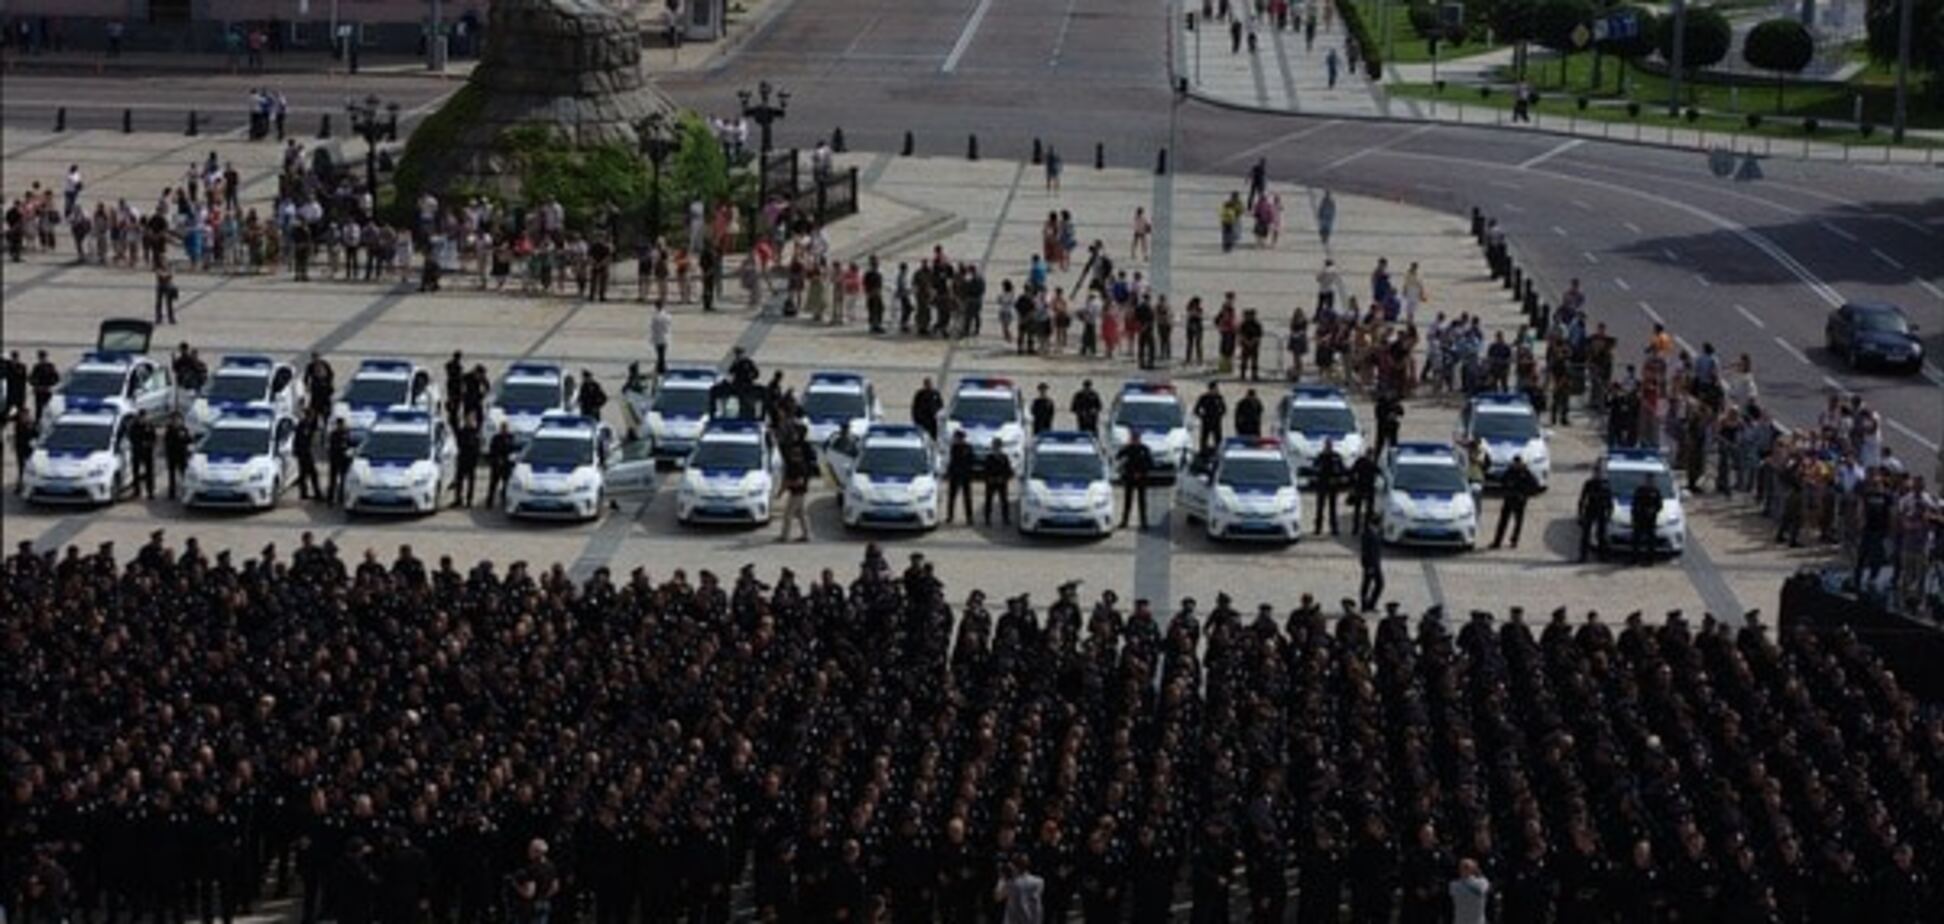 Патрульная полиция Украины